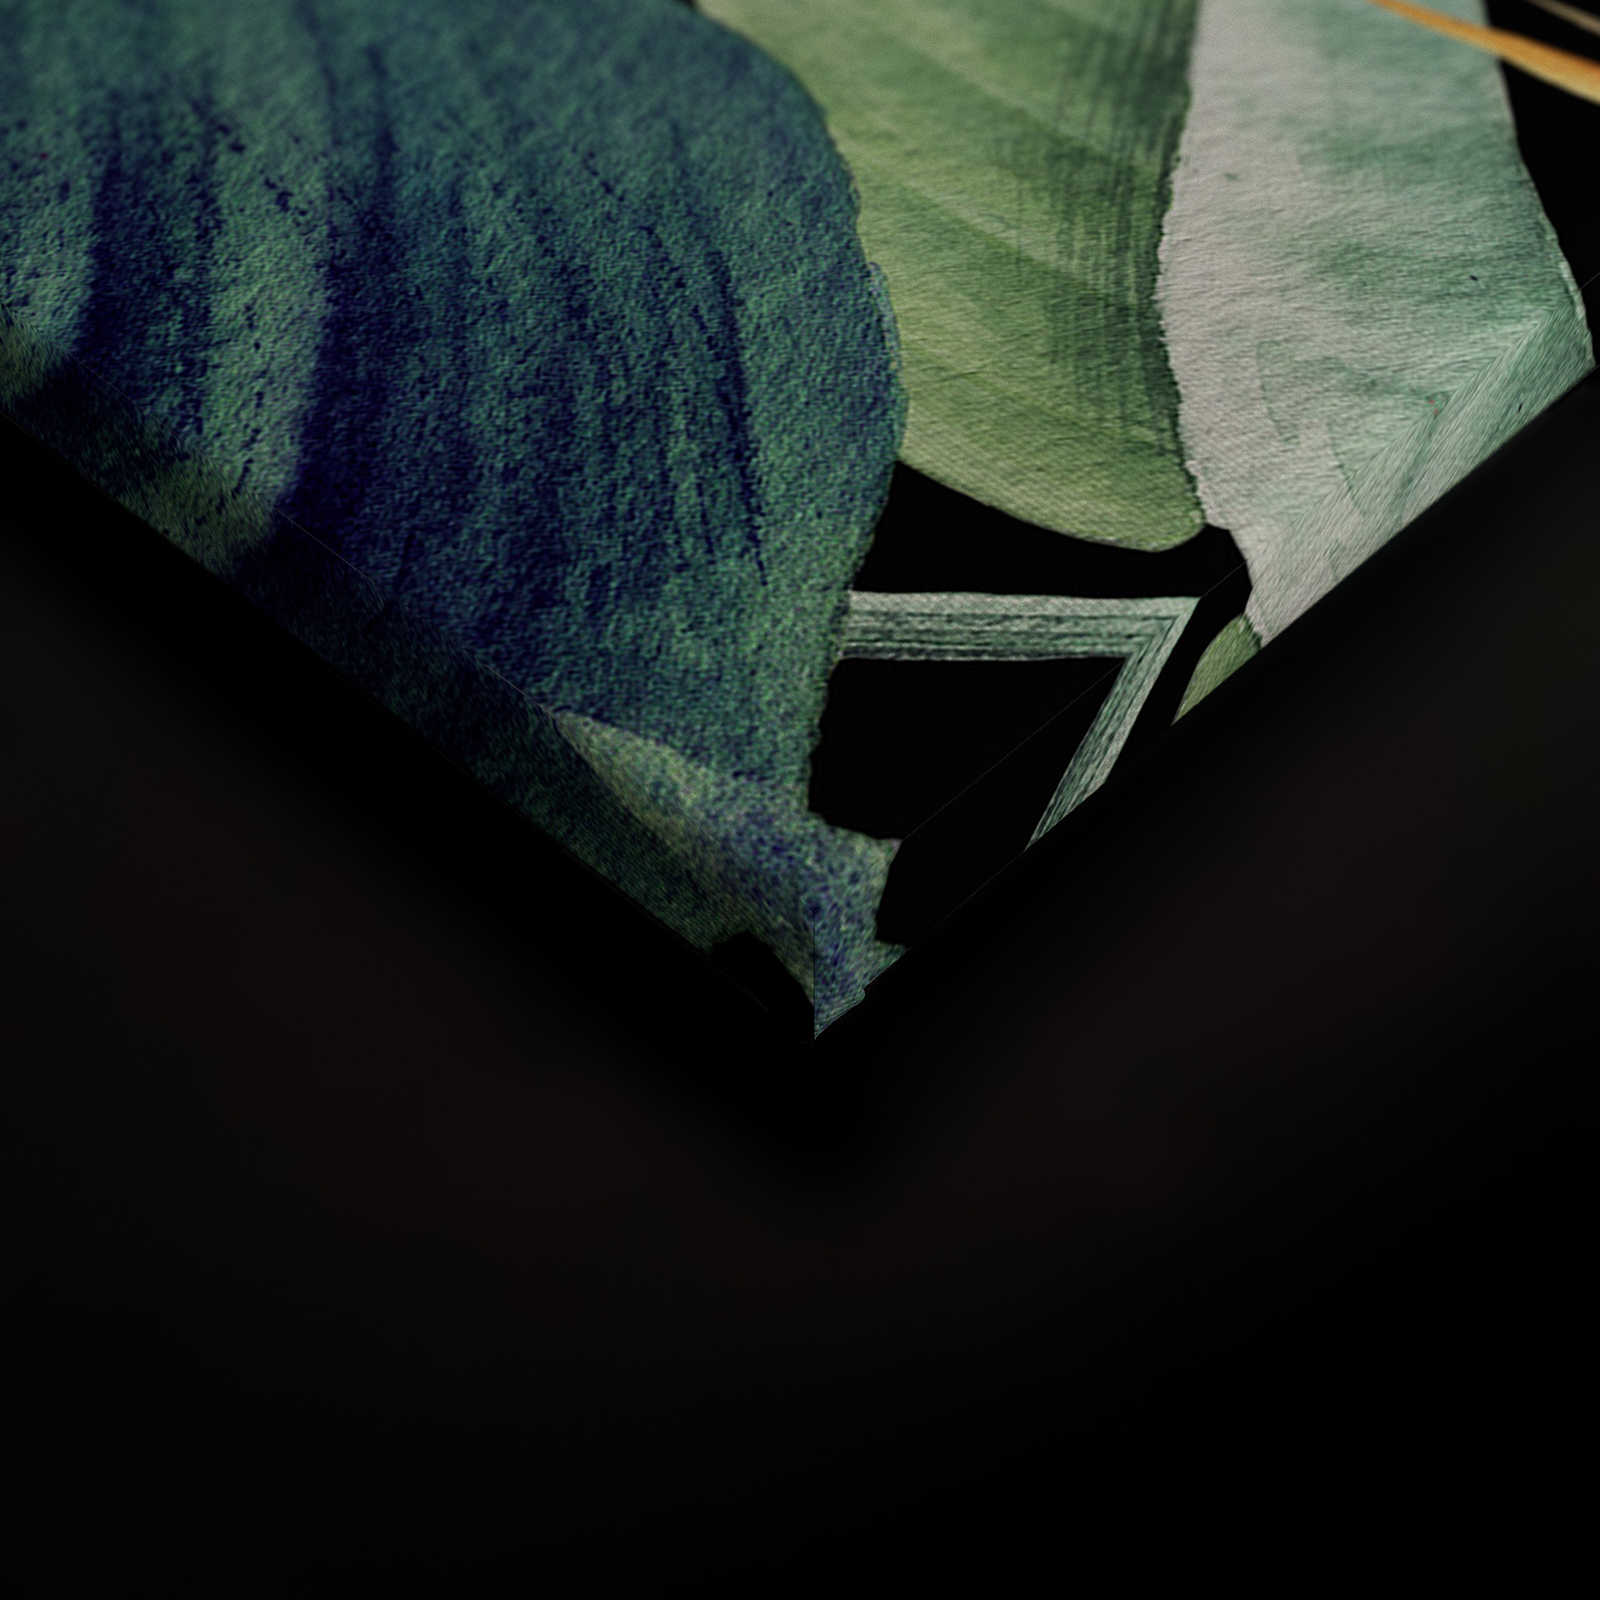             Cuadro en lienzo Motivo selvático pintado con hojas - 0,90 m x 0,60 m
        